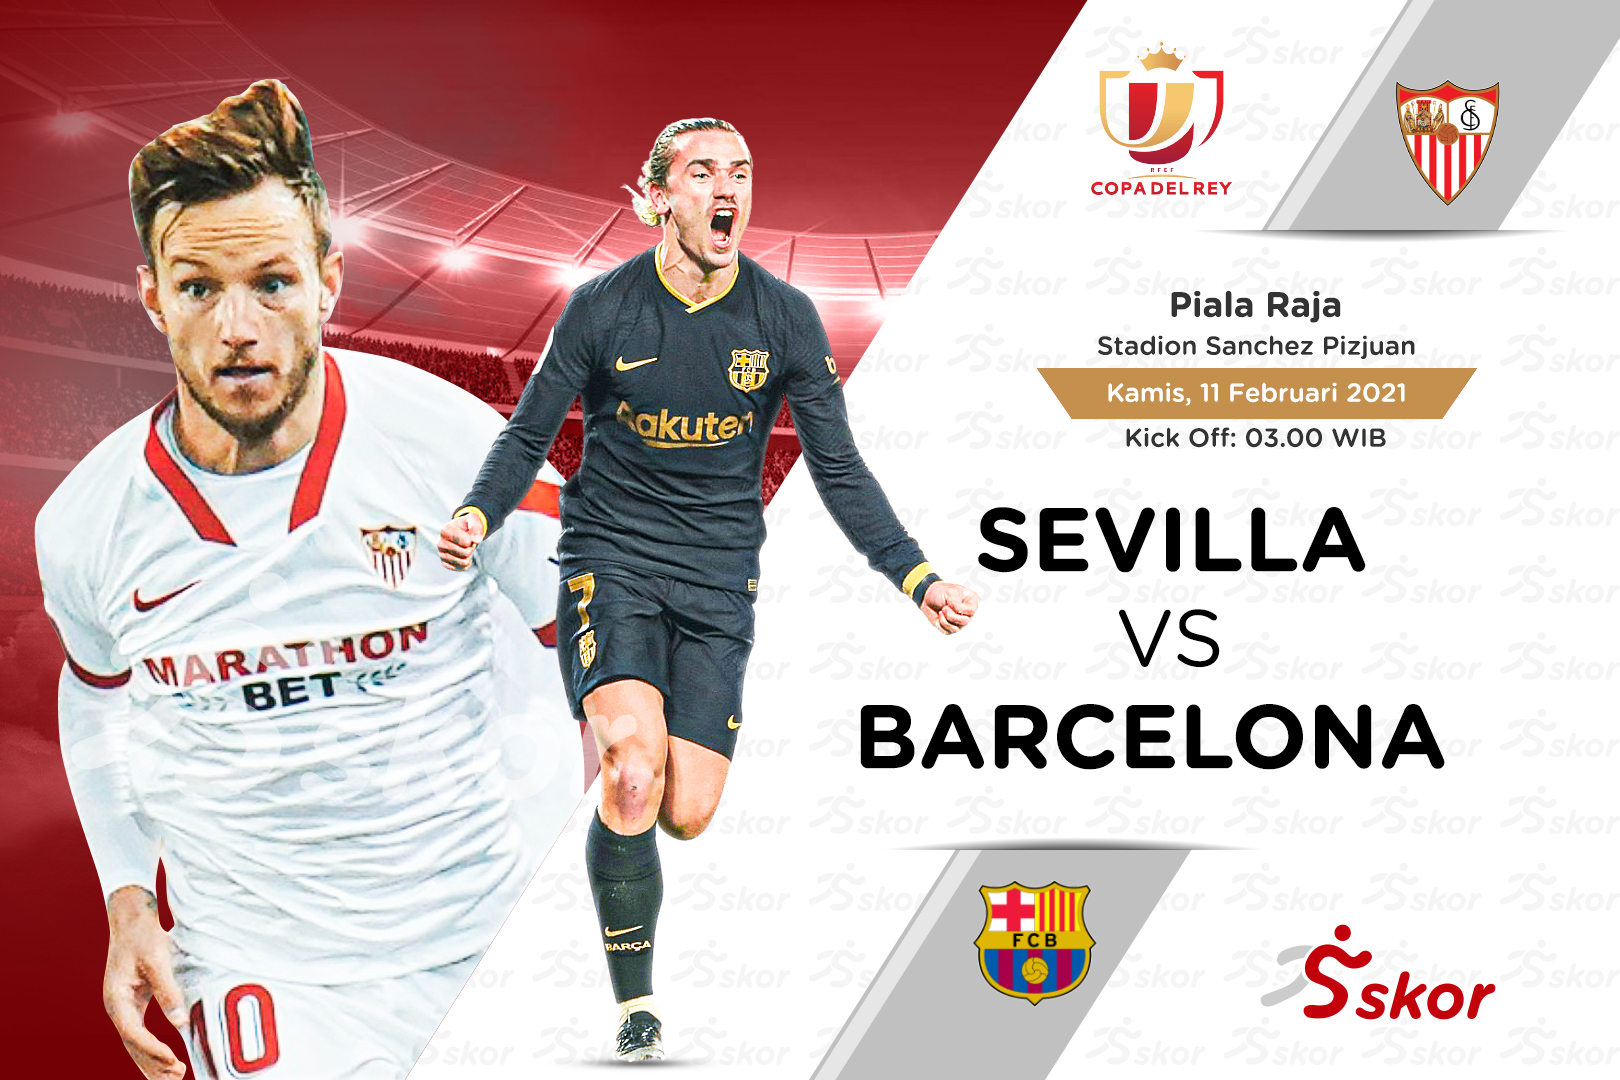 Link Live Streaming Sevilla vs Barcelona di Piala Raja